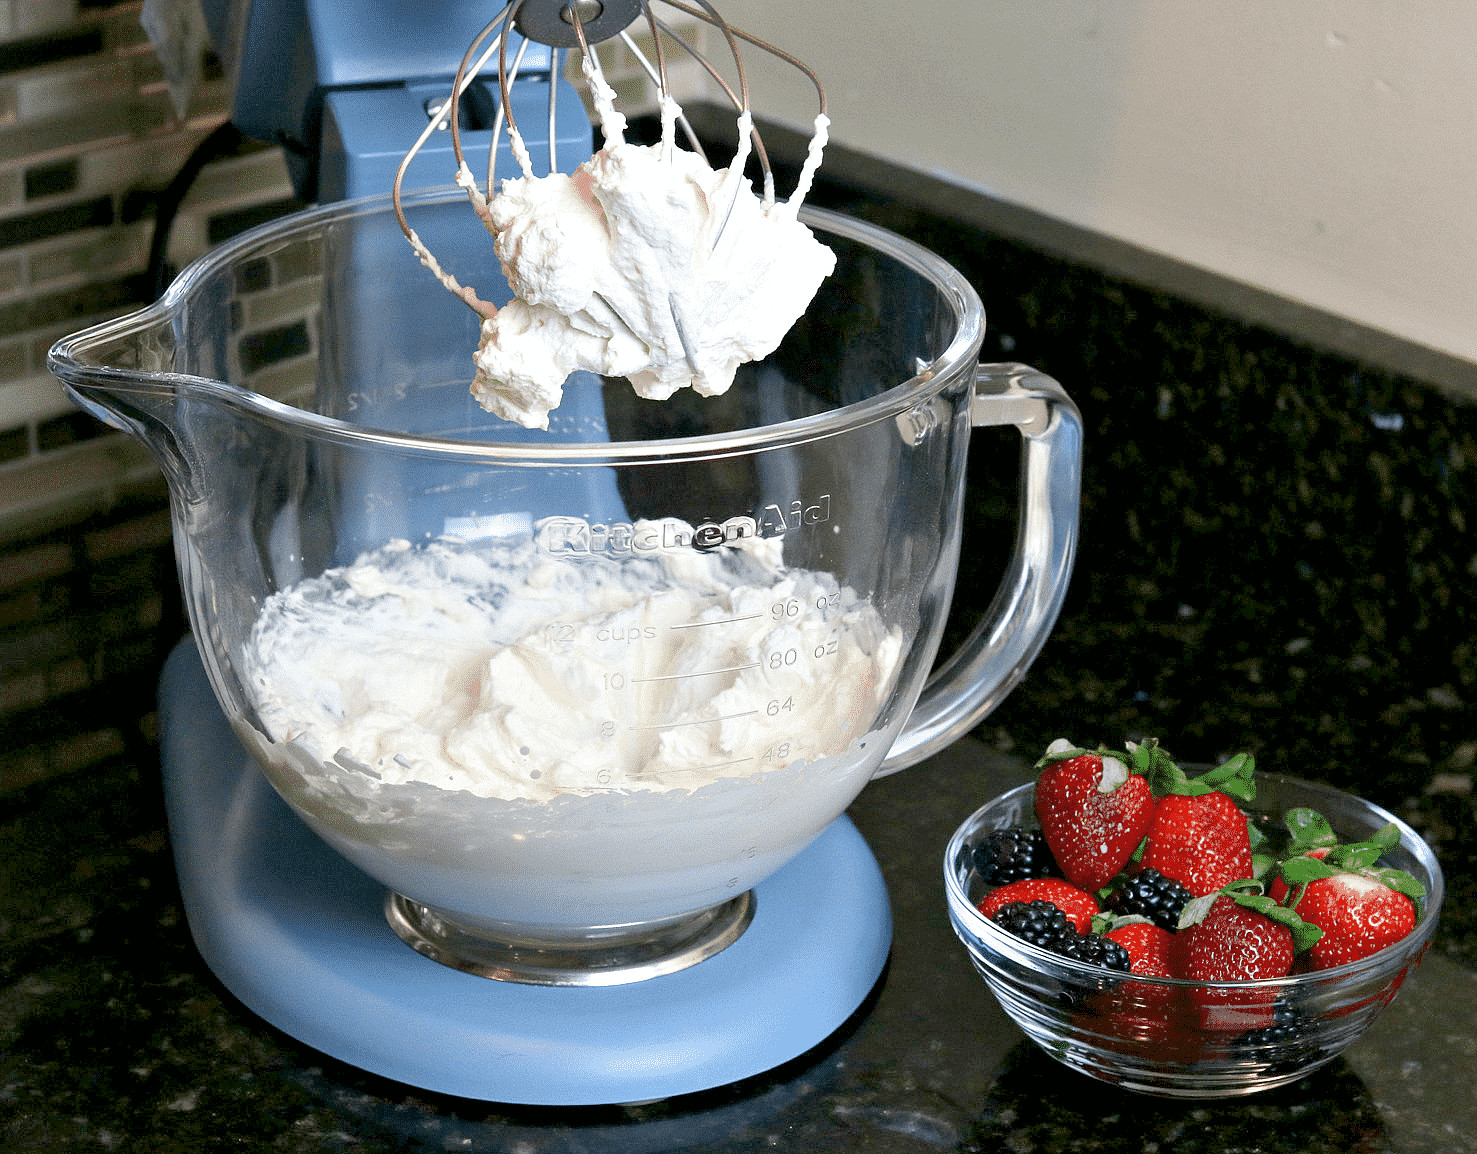 Cool Whip Keto Dessert
 Keto Whipped Cream Homemade Cool Whip Recipe in 2020